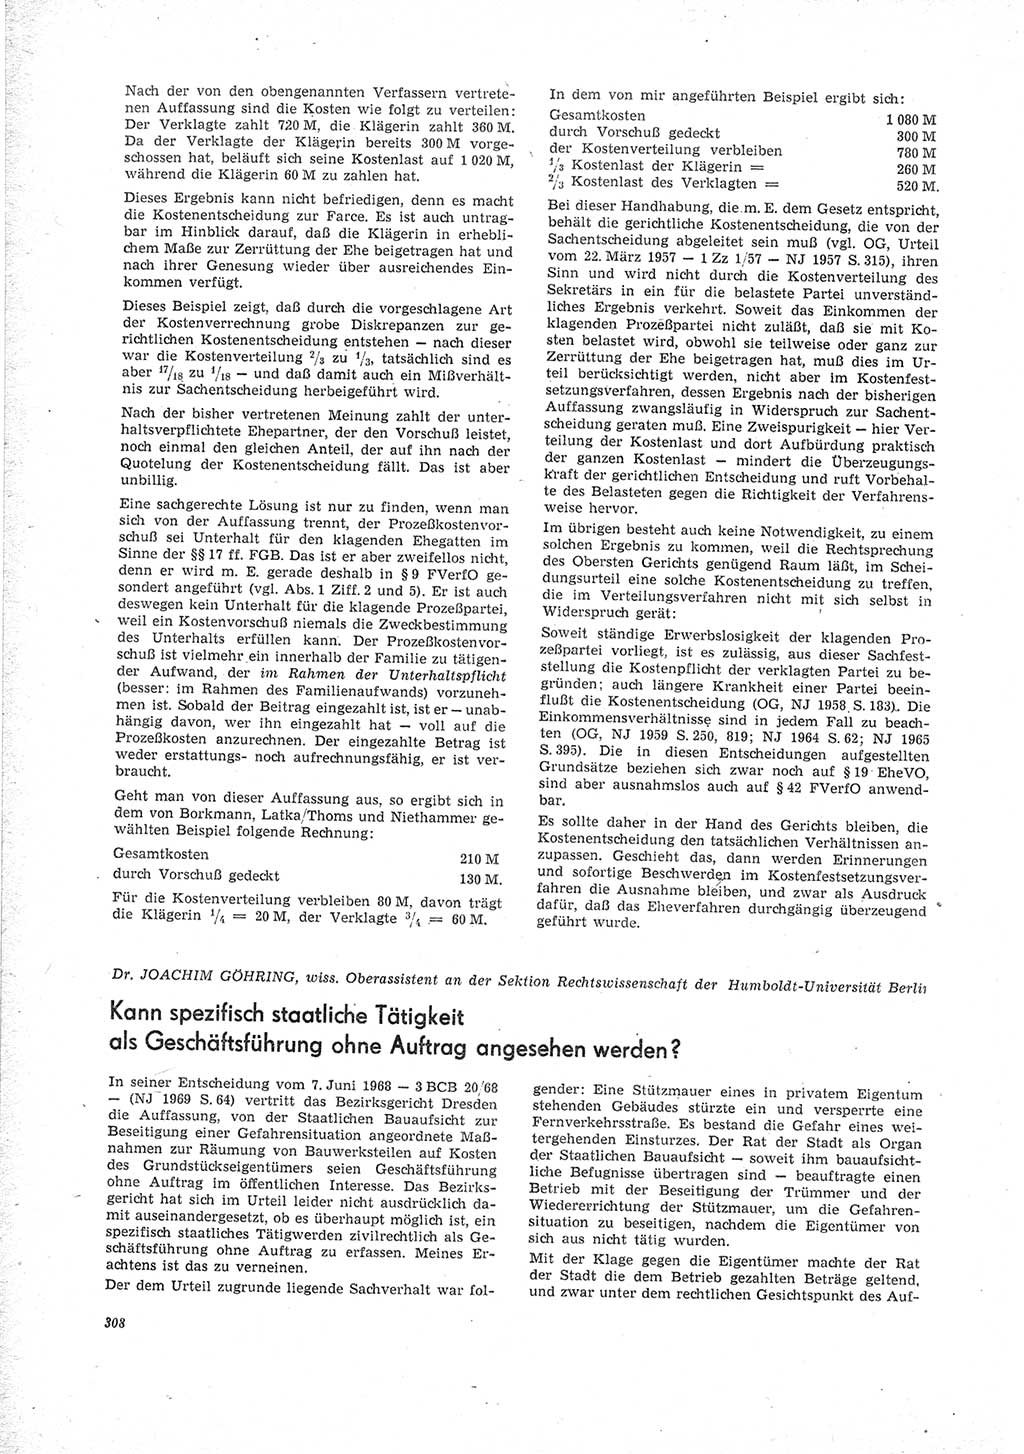 Neue Justiz (NJ), Zeitschrift für Recht und Rechtswissenschaft [Deutsche Demokratische Republik (DDR)], 23. Jahrgang 1969, Seite 308 (NJ DDR 1969, S. 308)